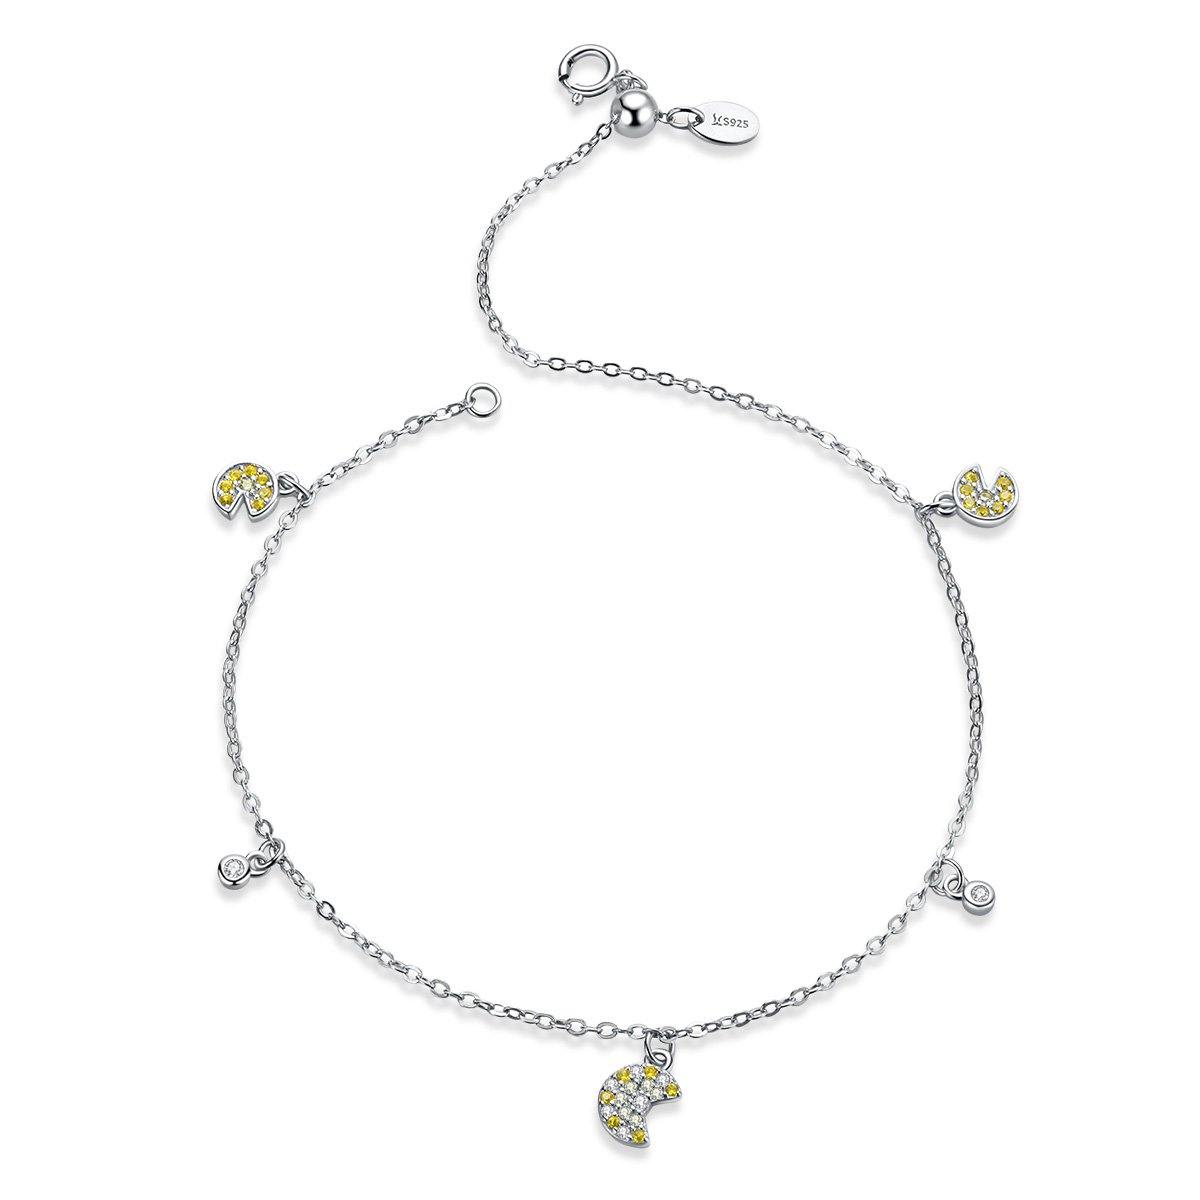 Lemon Ice 925 Sterling Silver Bracelet - Aisllin Jewelry